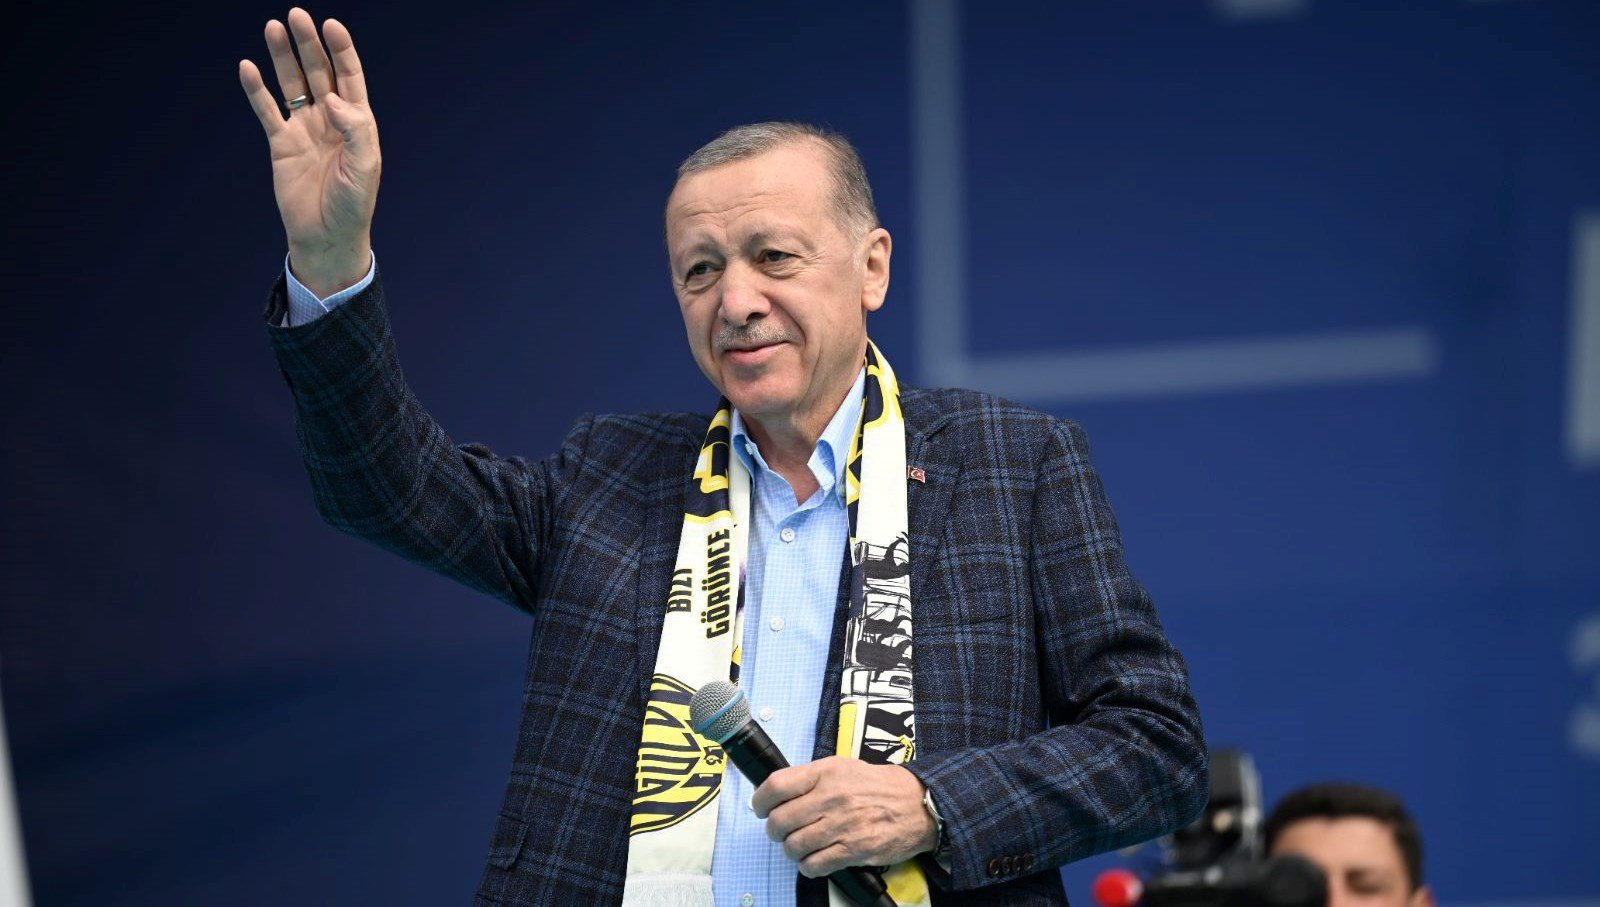 Cumhurbaşkanı Erdoğan’dan Kılıçdaroğlu’na 300 milyar dolar tepkisi